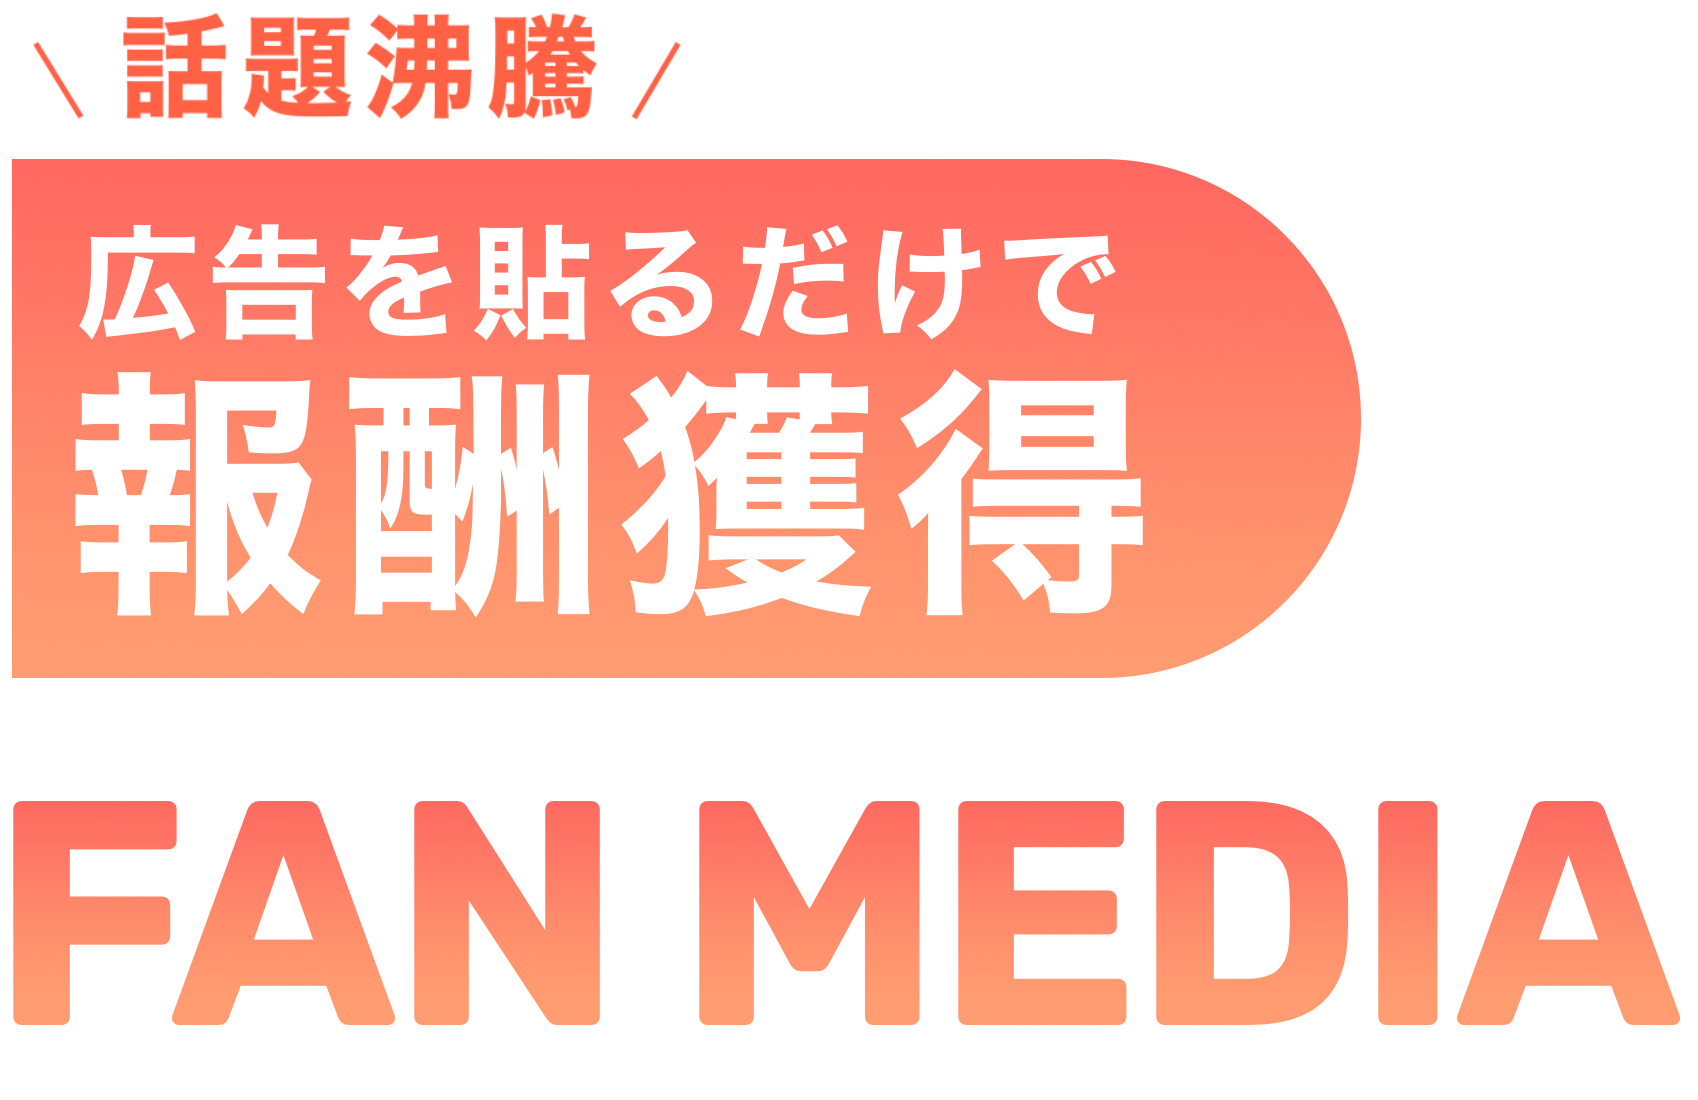 FAN MEDIA